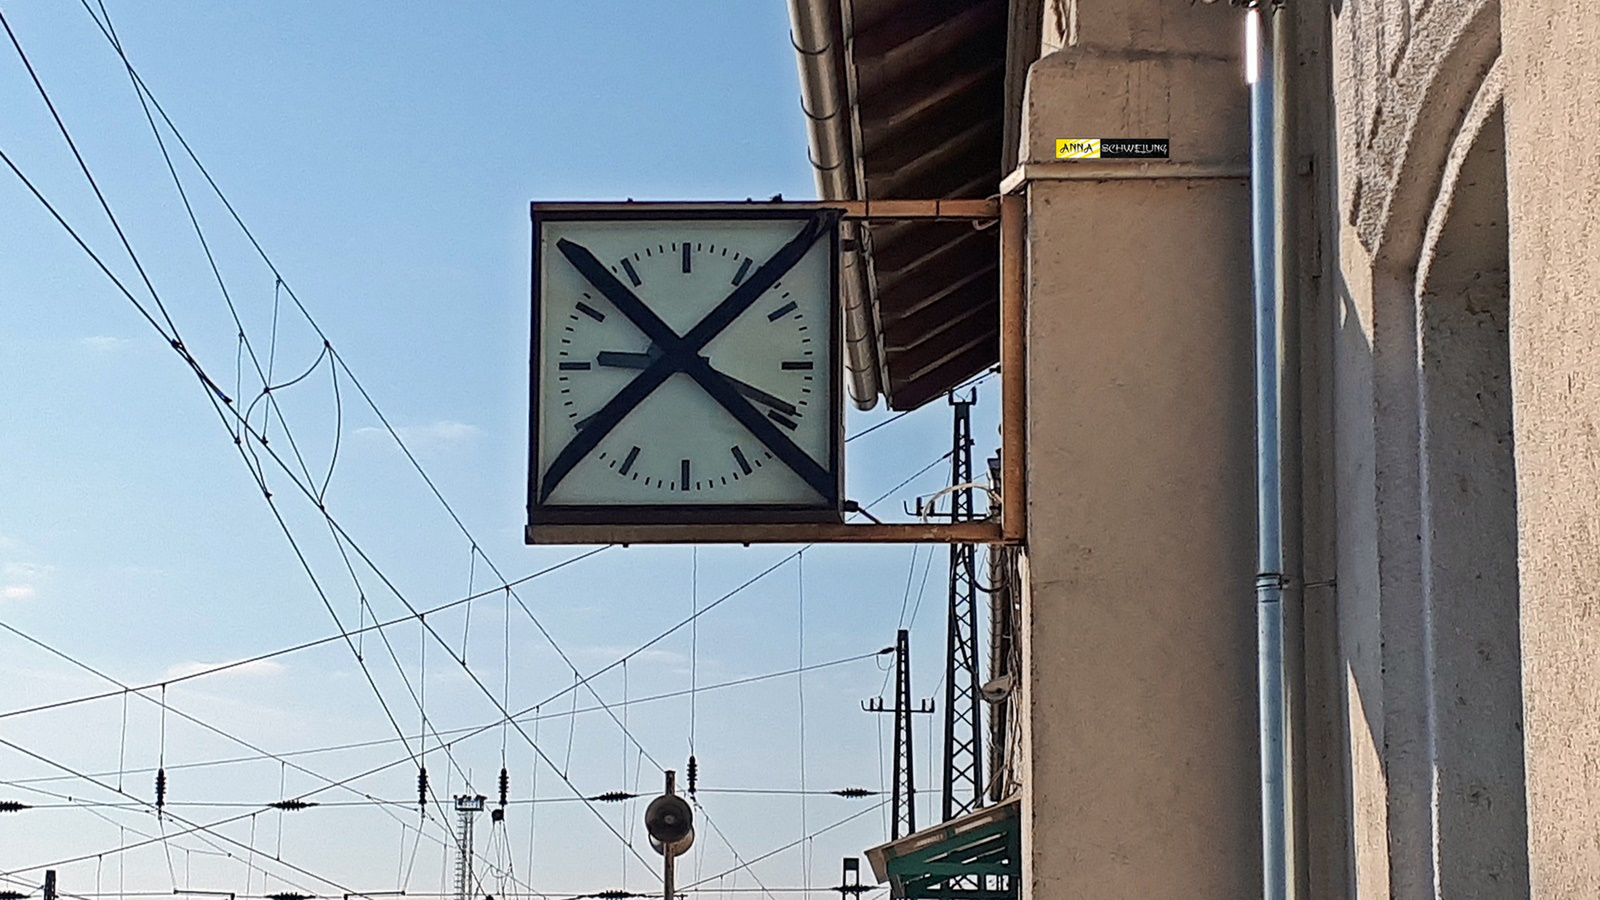 2019-11-25 13:32:21 - Ferencváros vasútállomás